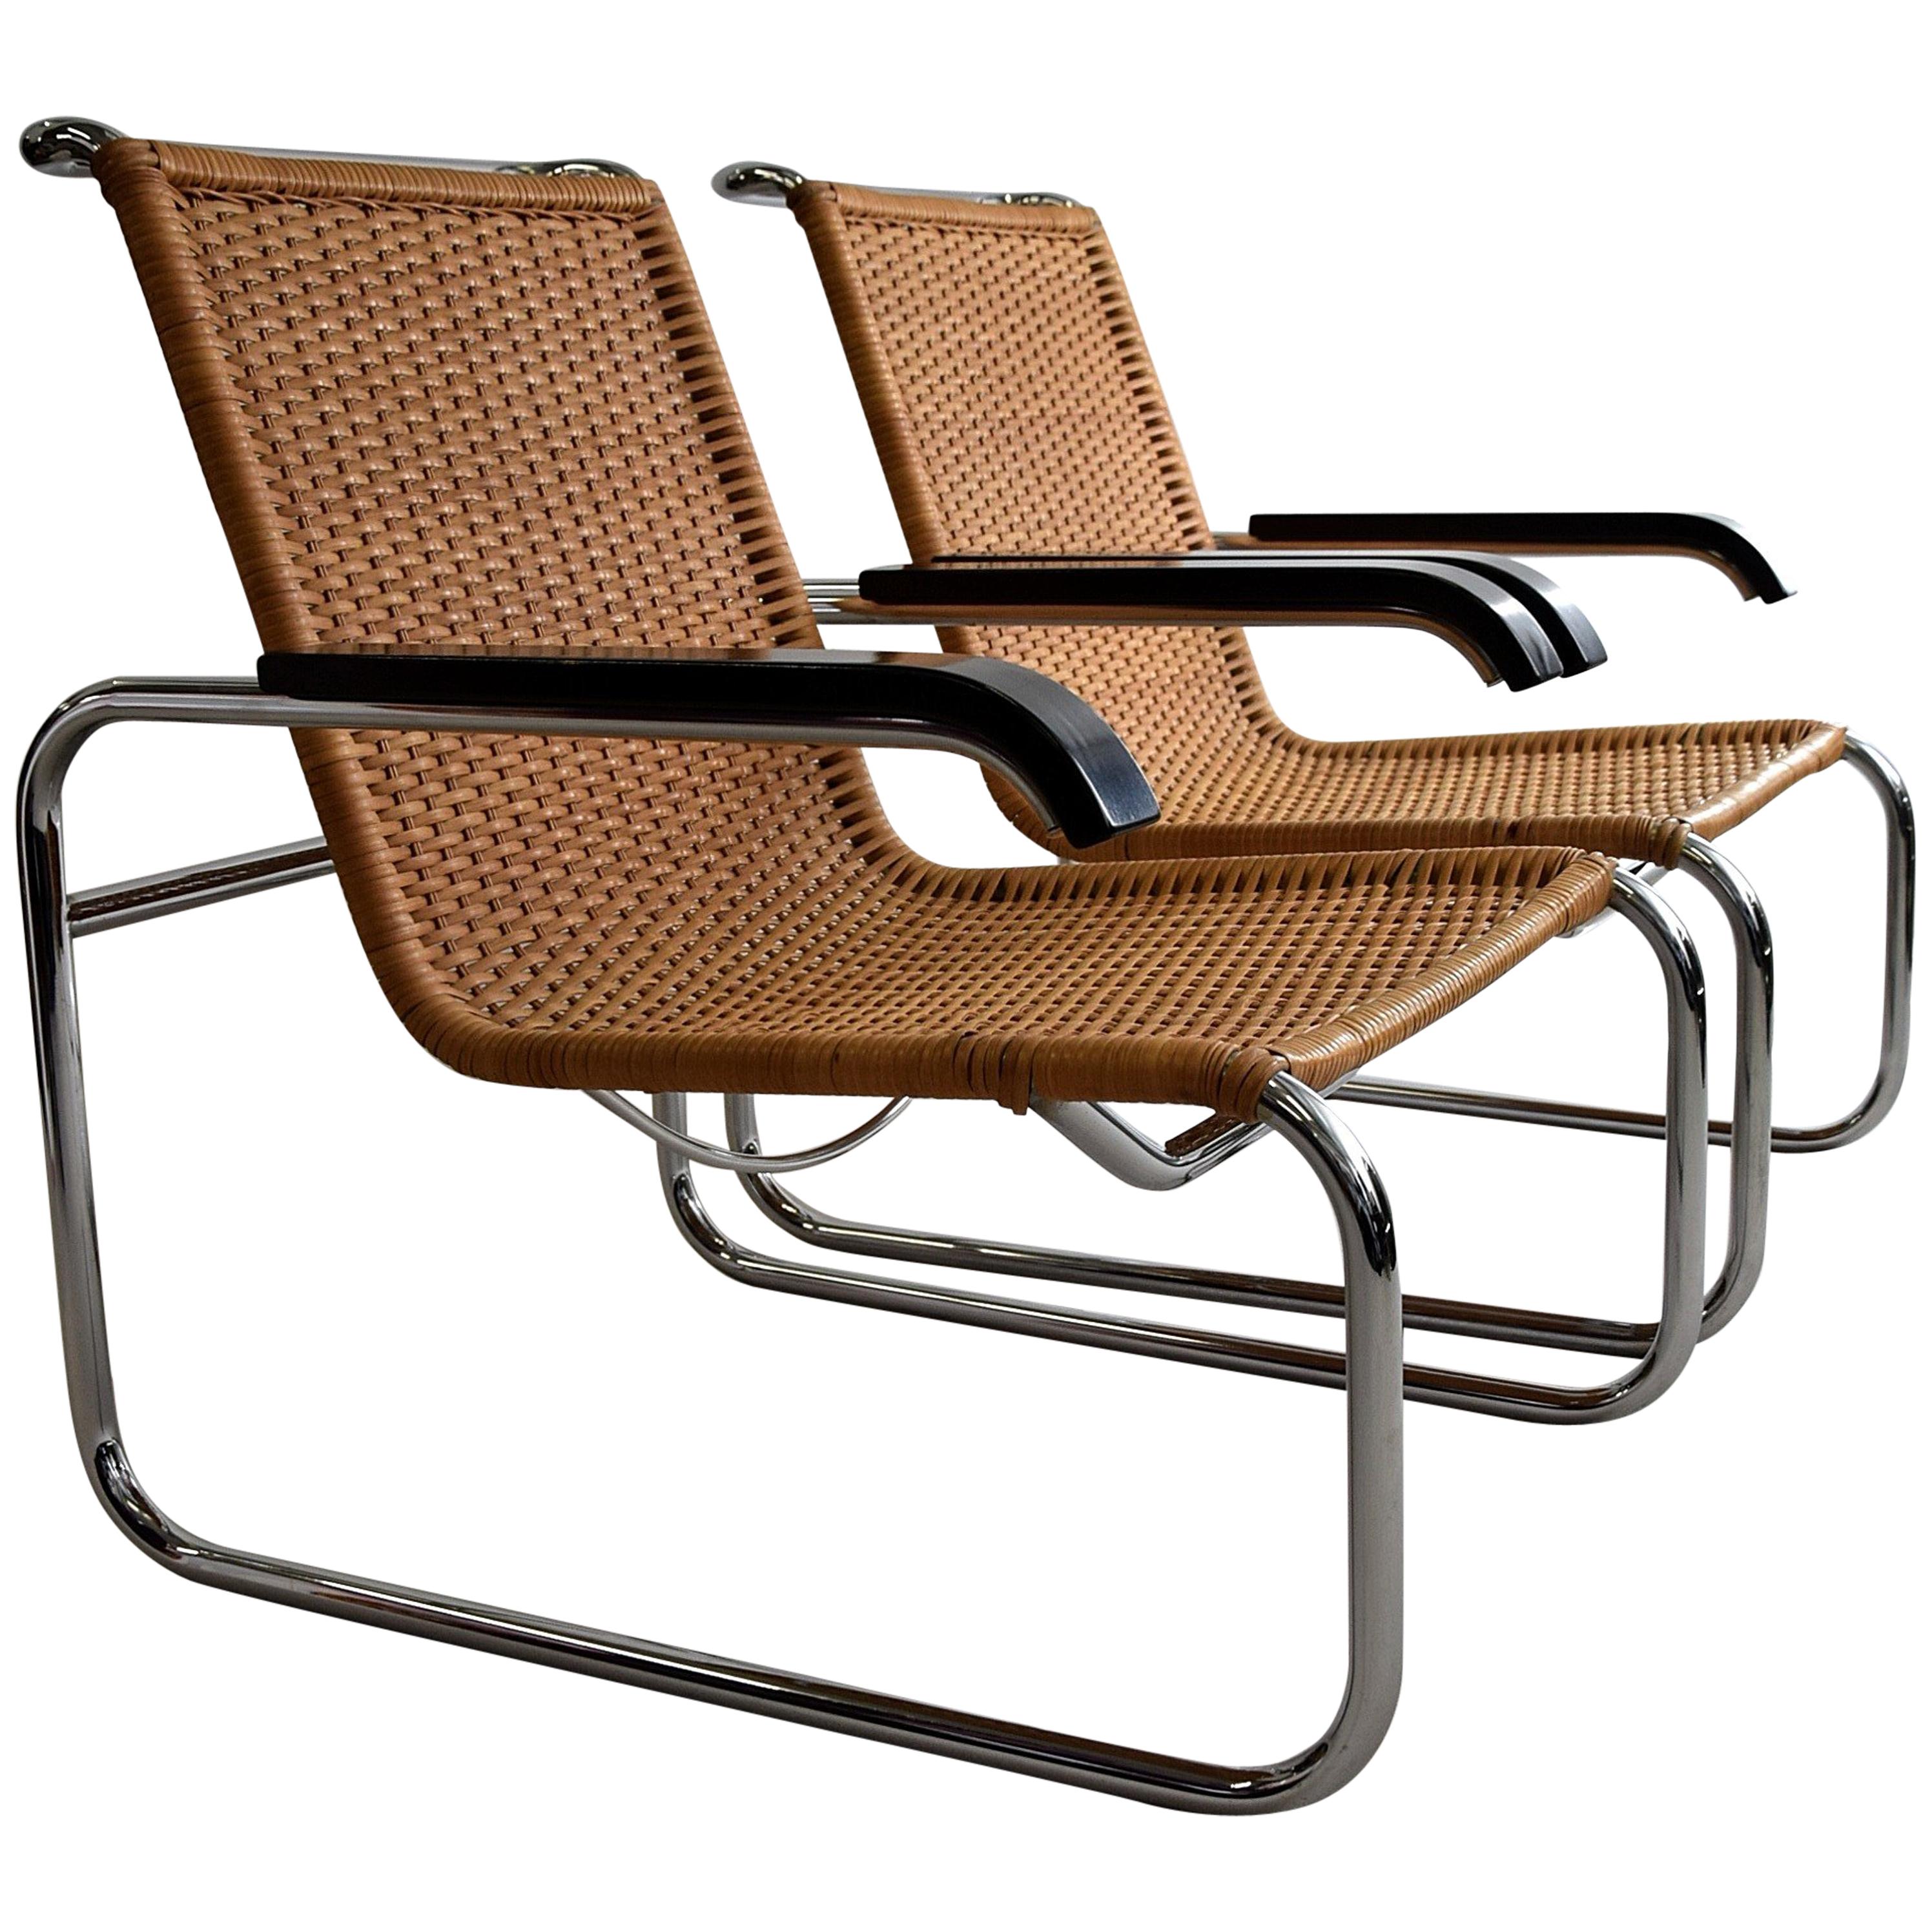 Marcel Breuer S35 Bauhaus Club Chair for Thonet